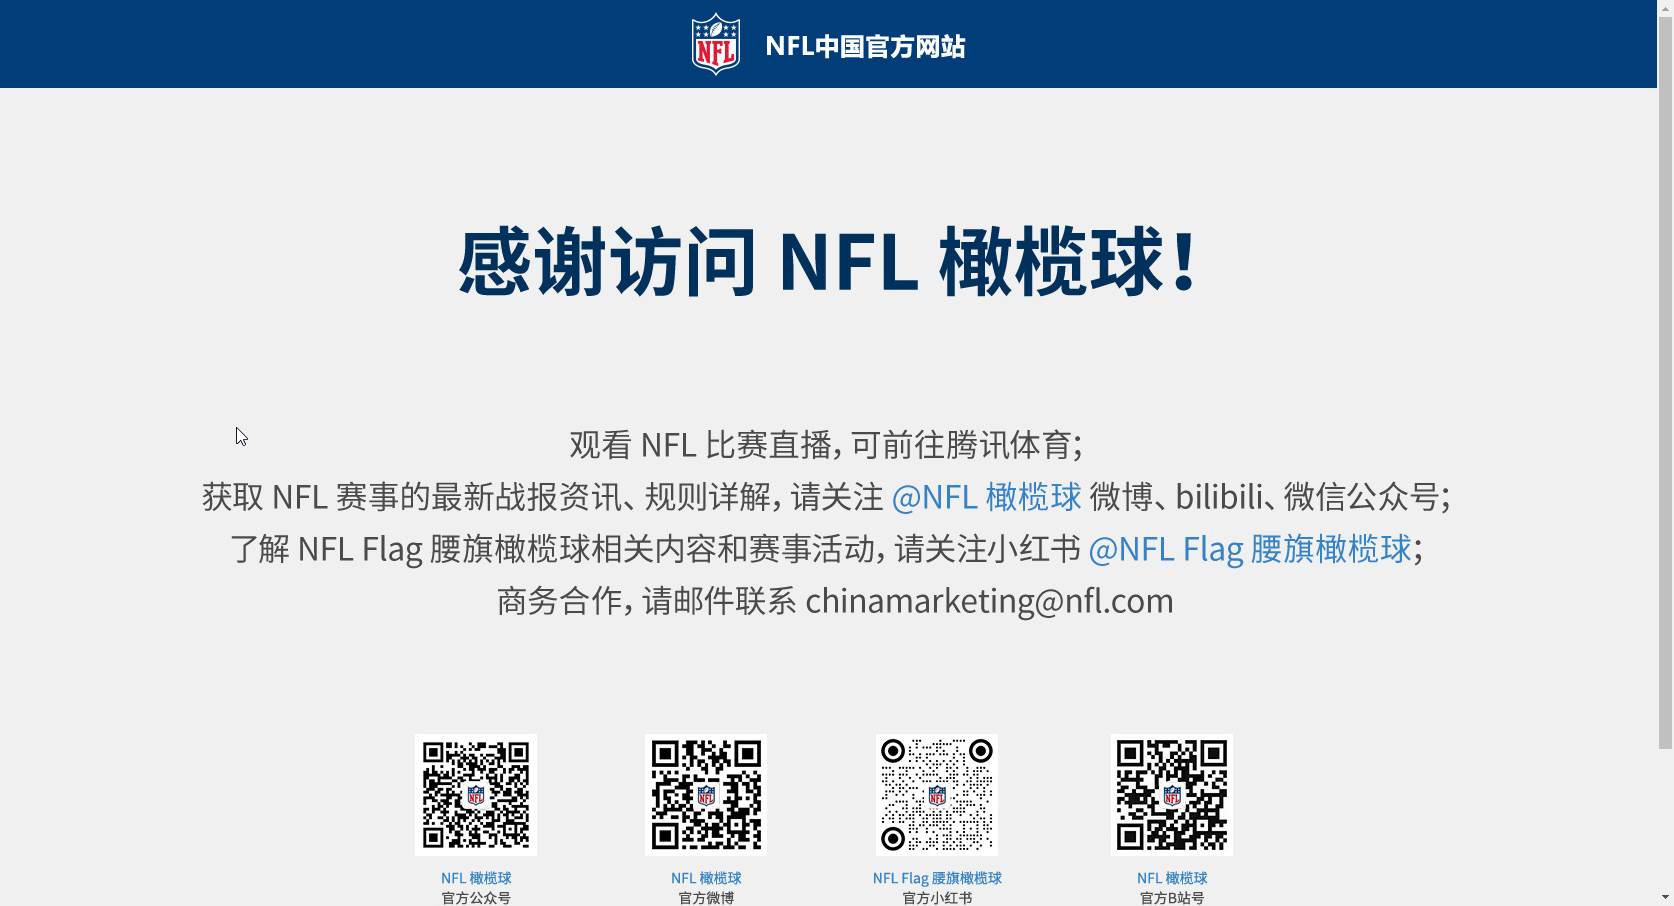 NFL中文官网